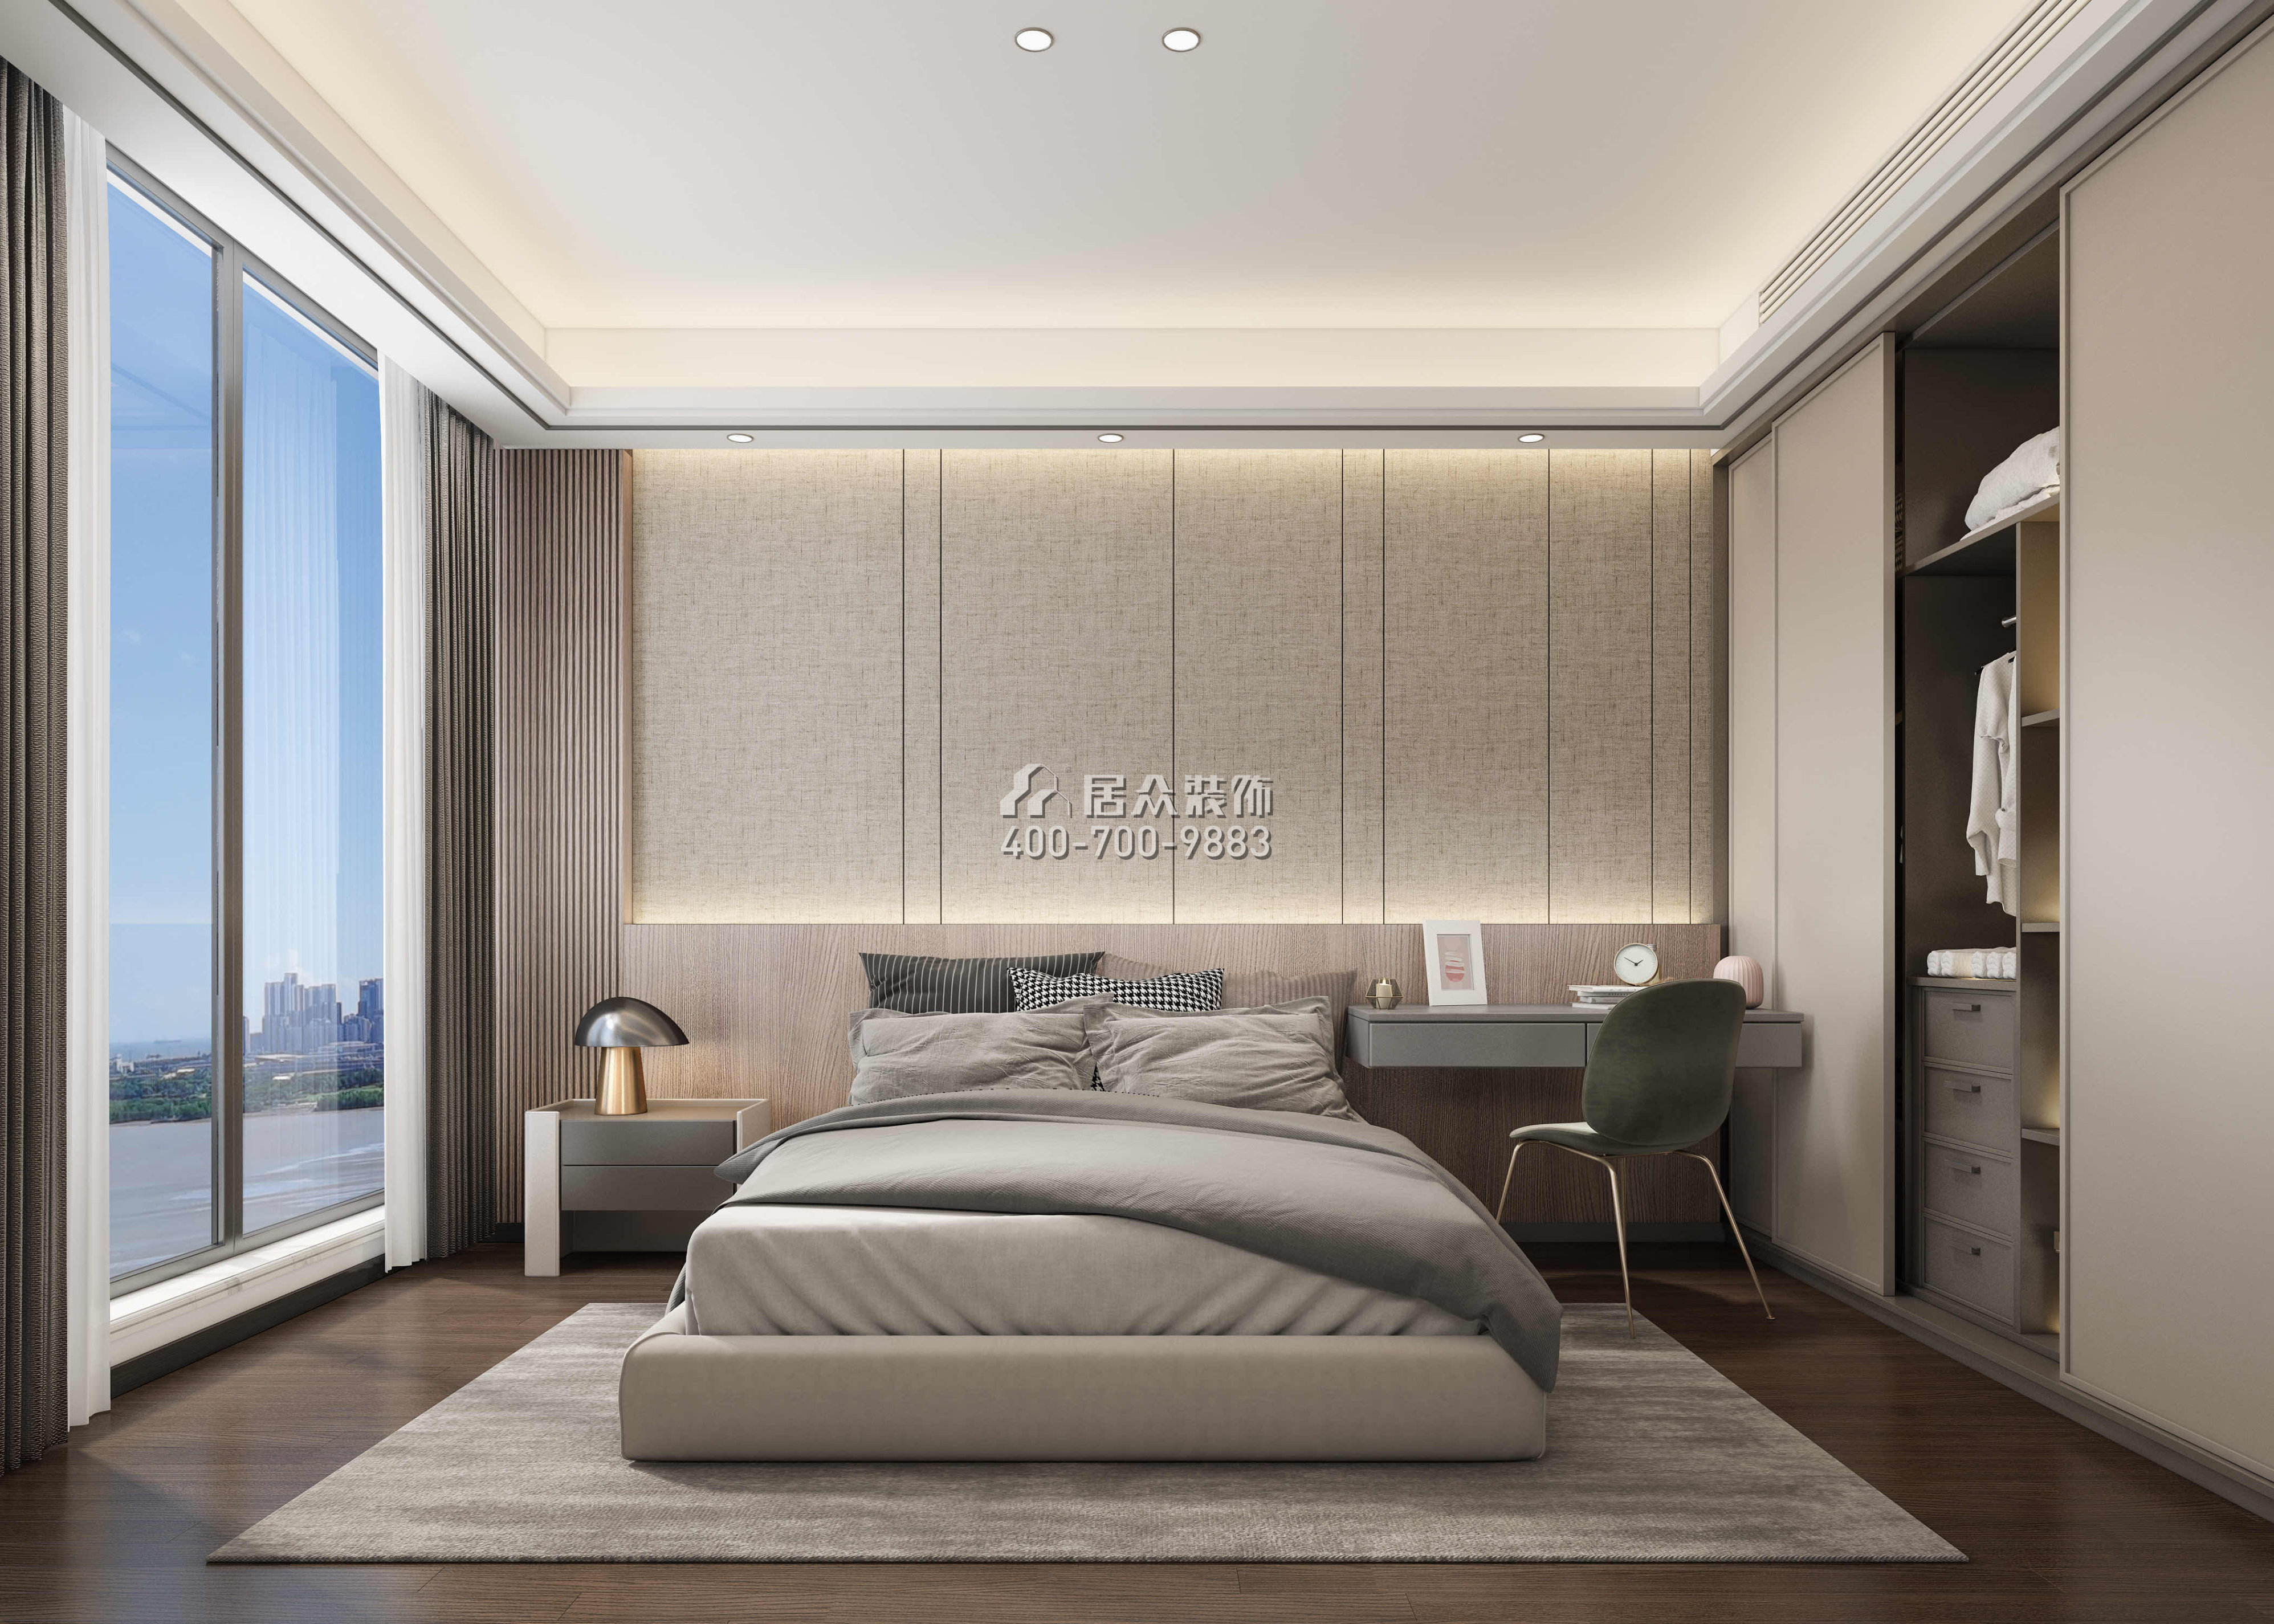 红树西岸190平方米现代简约风格平层户型卧室装修效果图